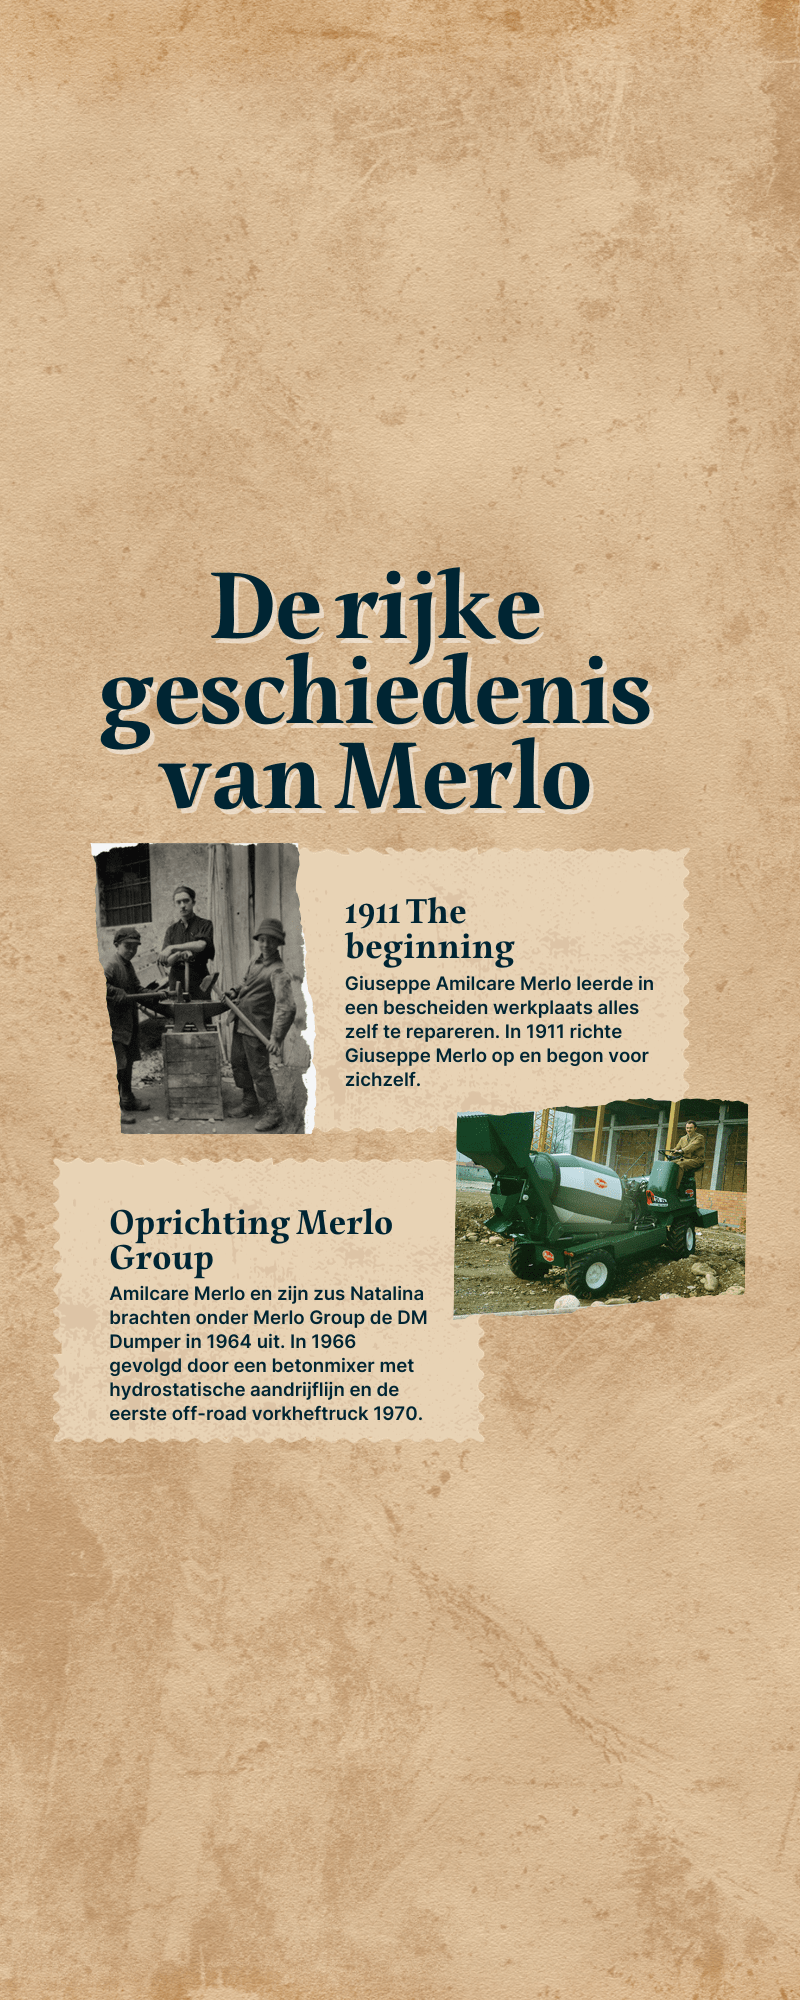 Informatieposter over de geschiedenis van Merlo.